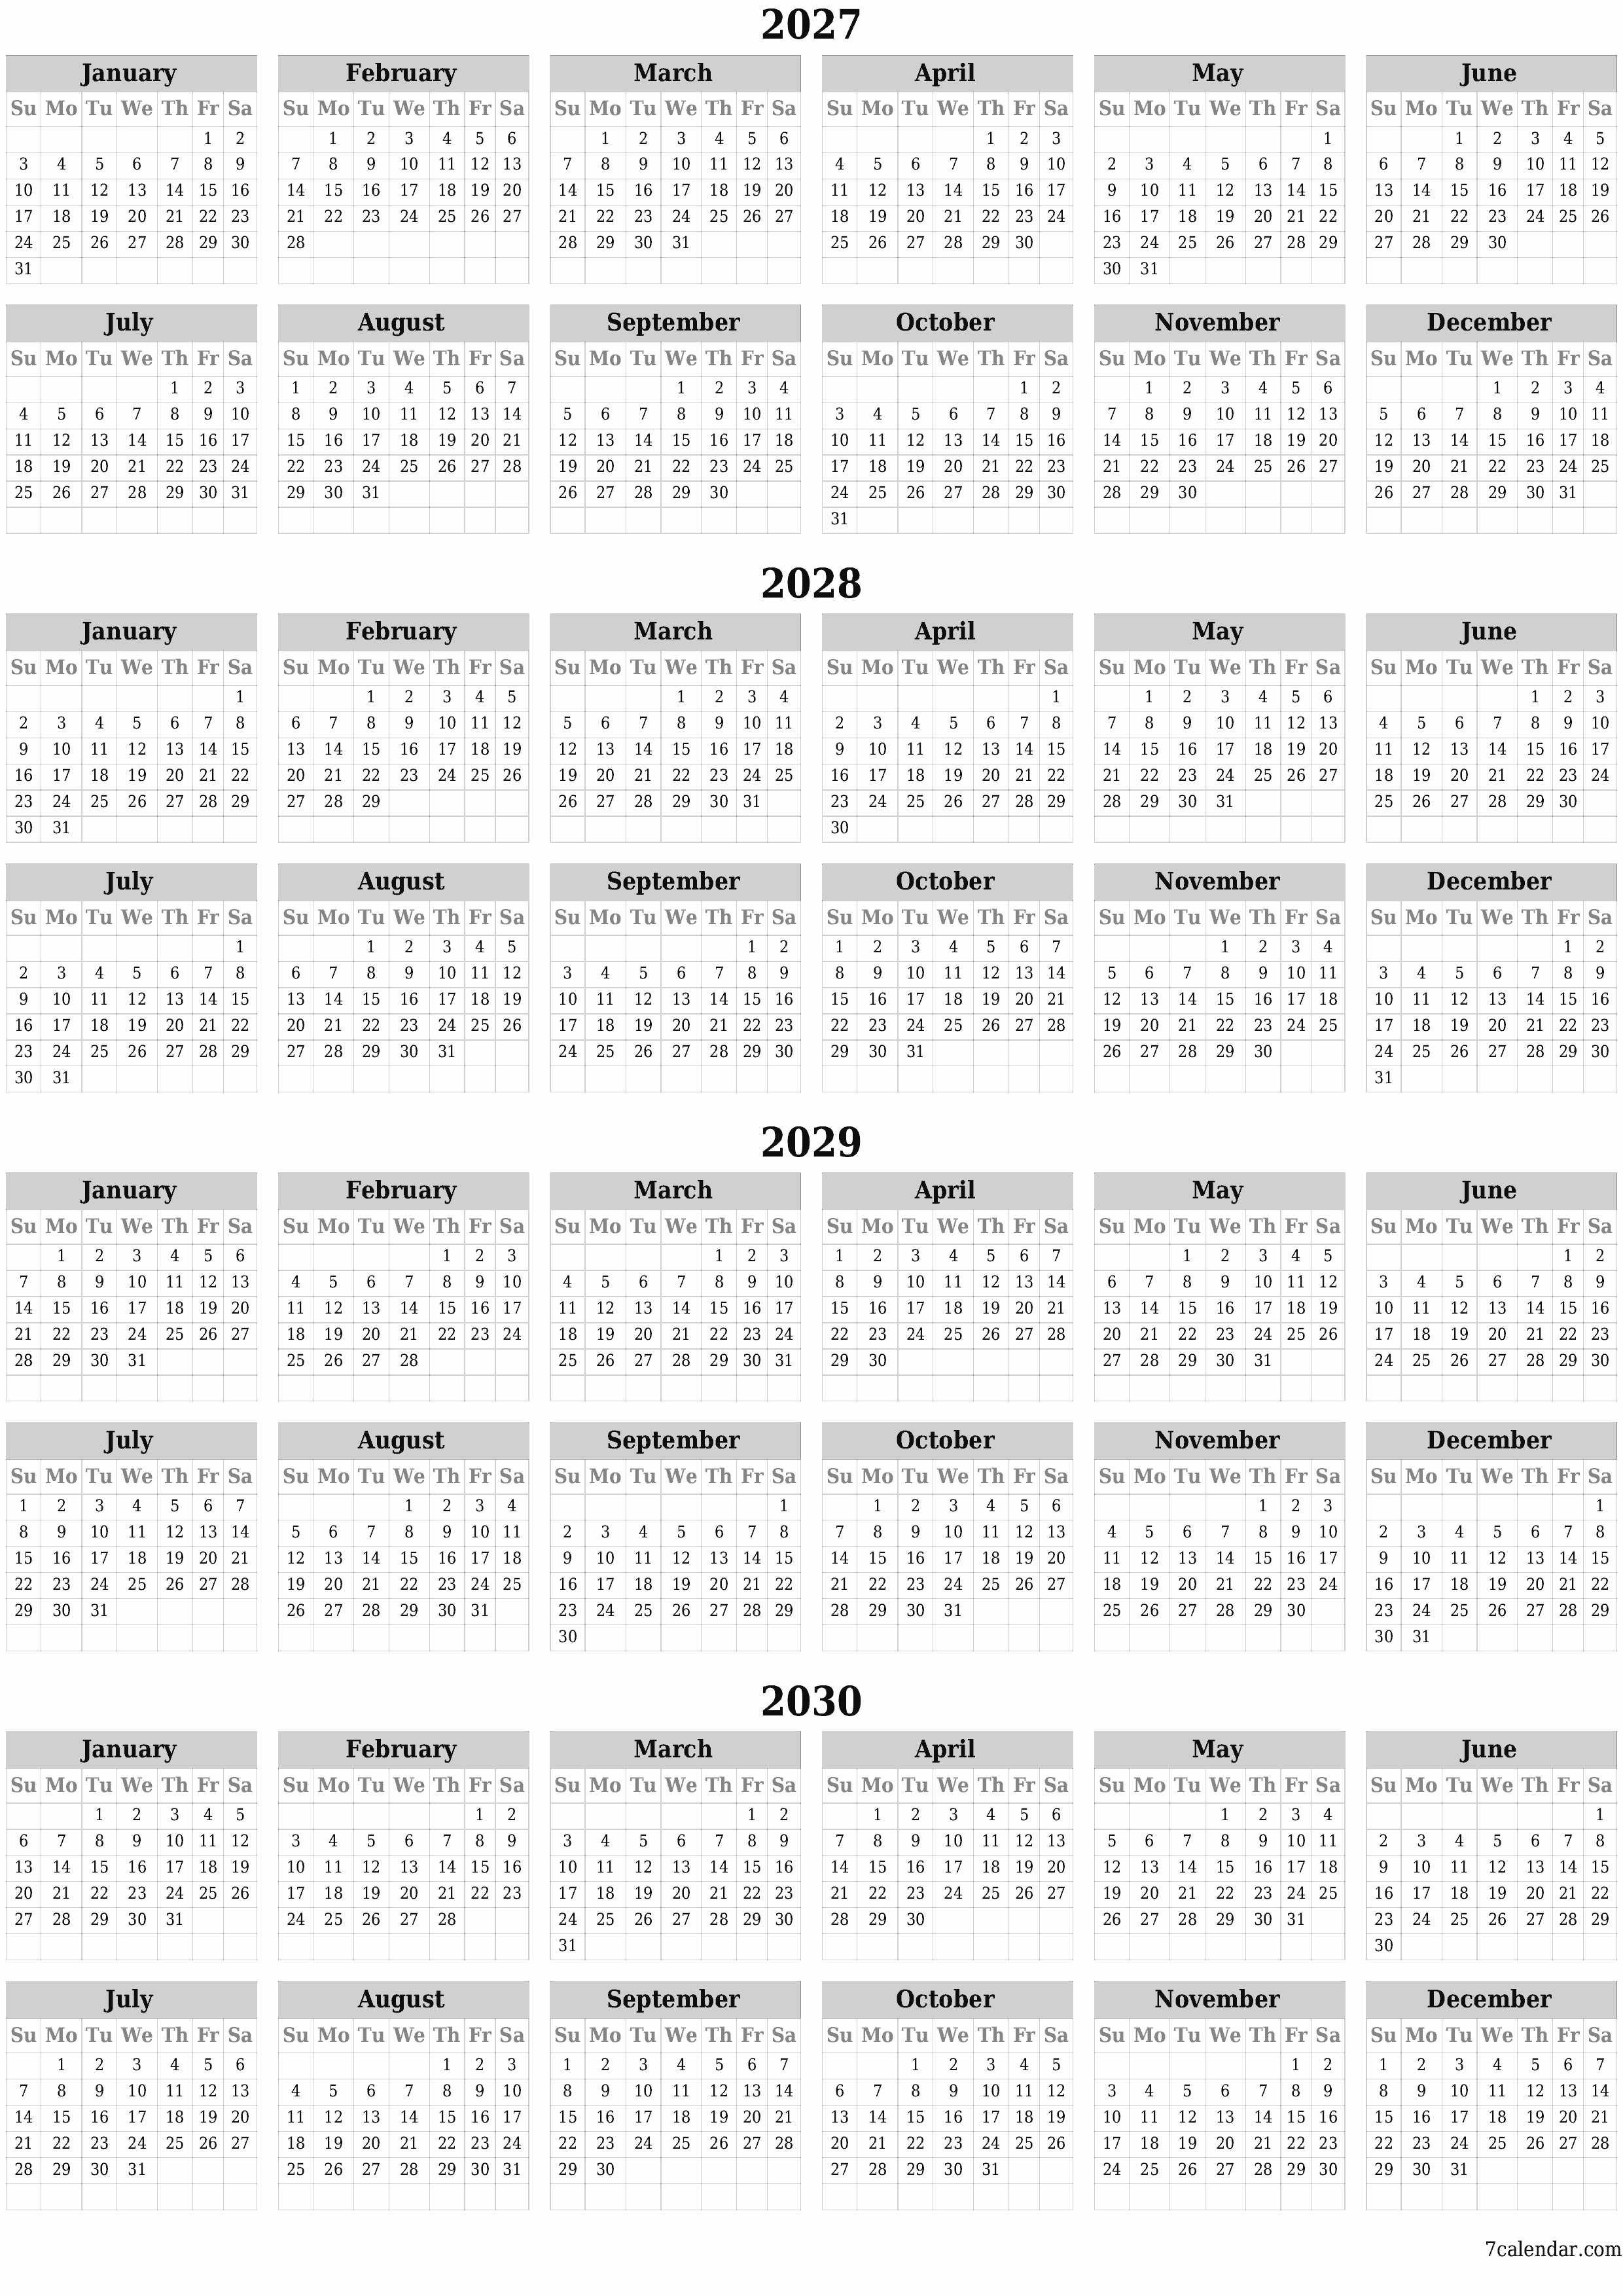 Blank calendar 2027, 2028, 2029, 2030